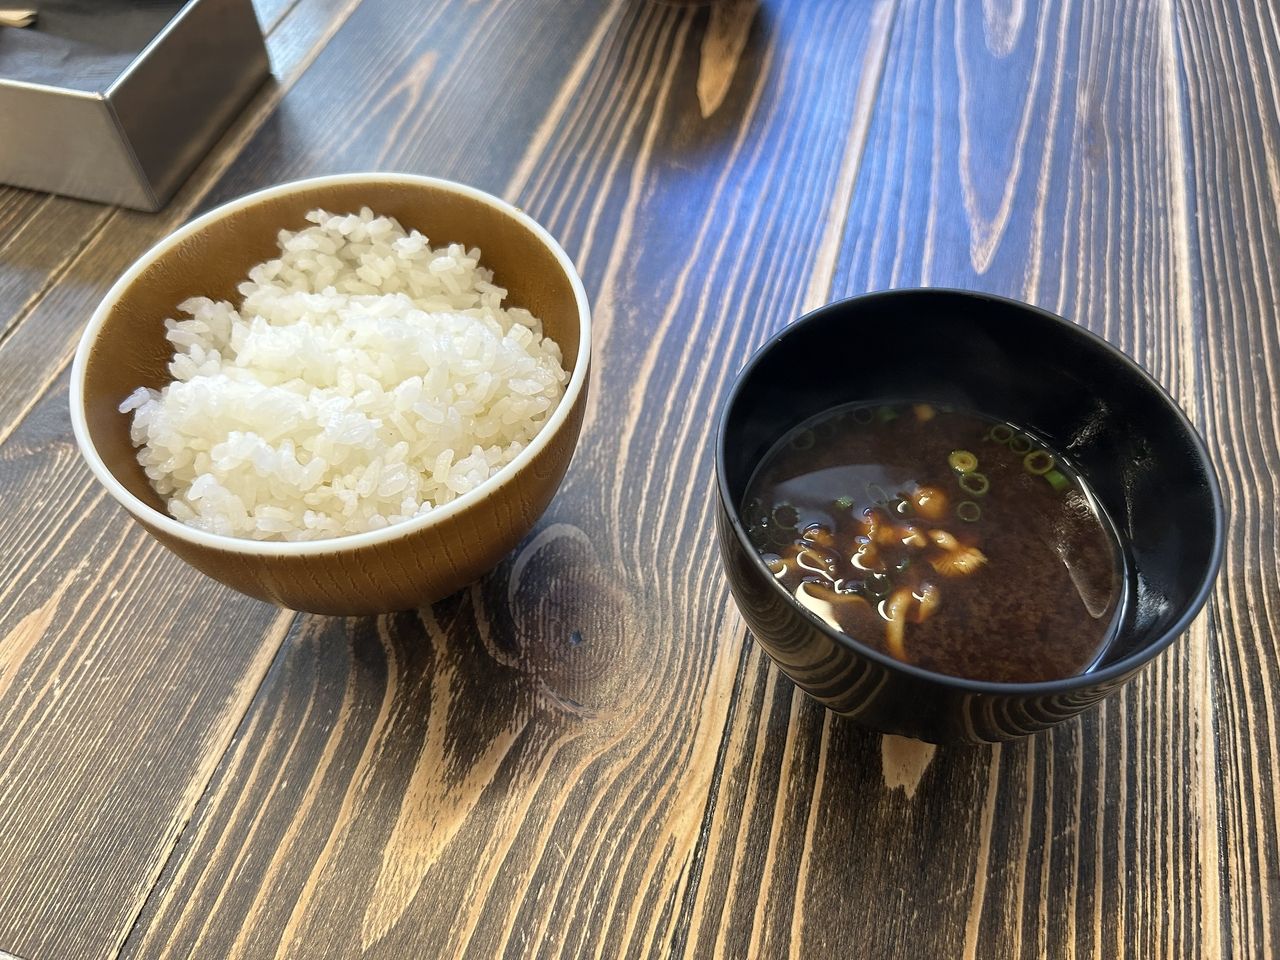 やはり私は日本人
お米が旨い！
